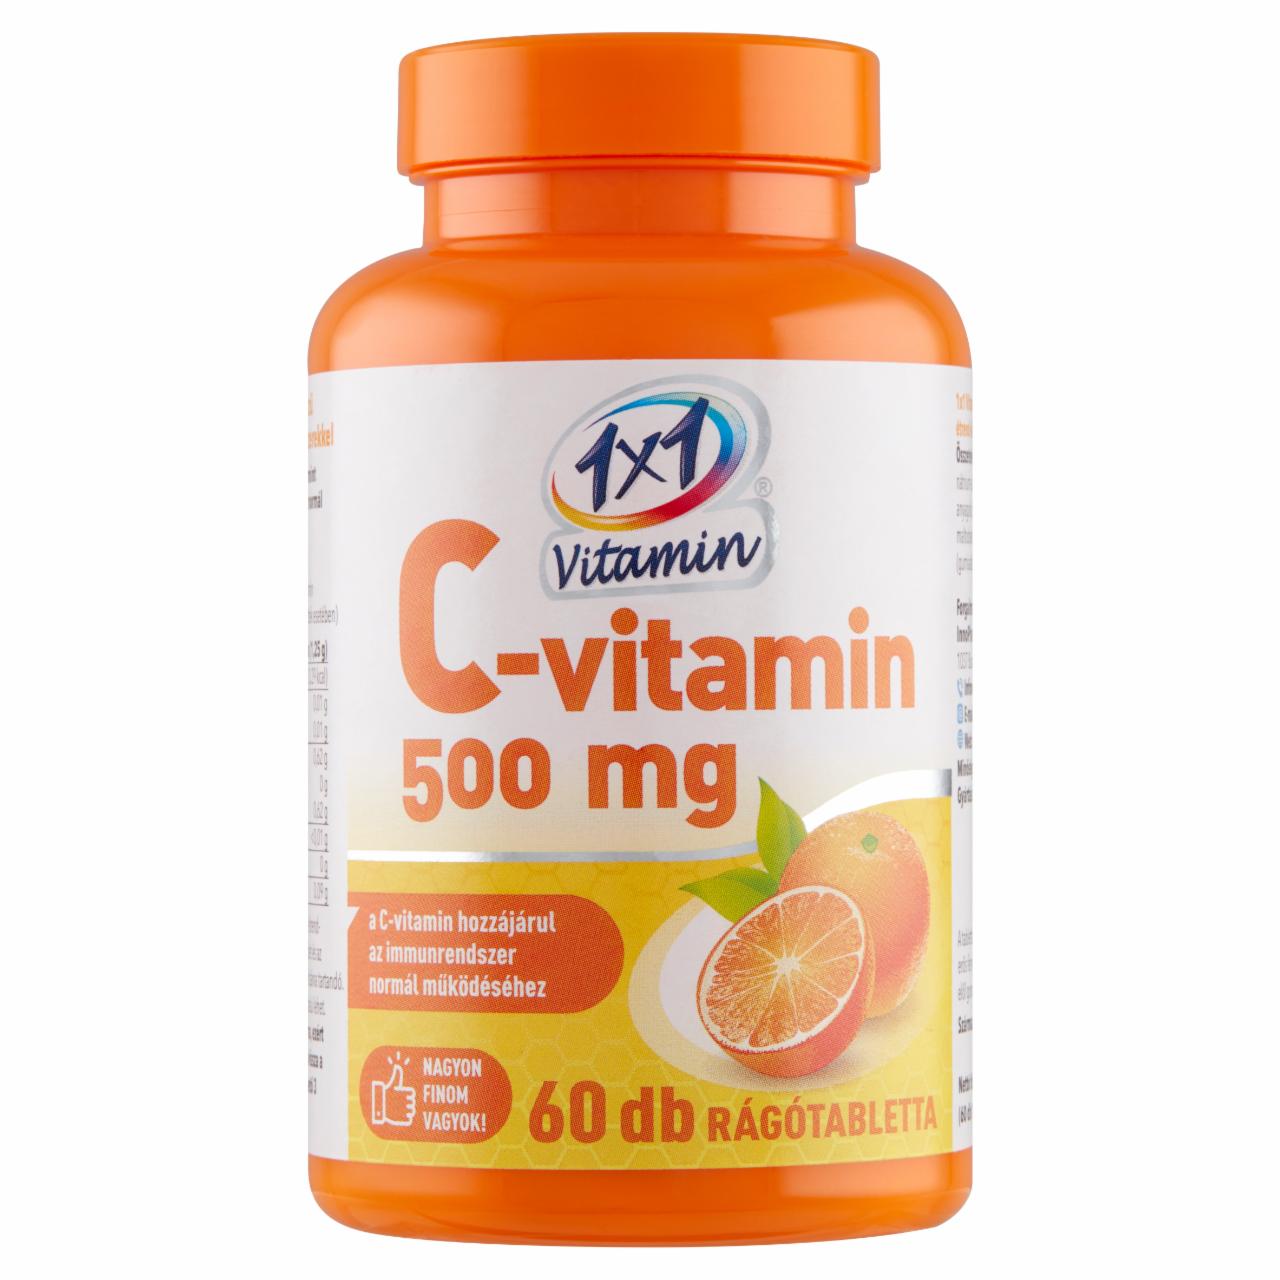 Képek - 1x1 Vitamin C-vitamin 500 mg narancsízű étrend-kiegészítő rágótabletta 60 x 1250 mg (75 g)